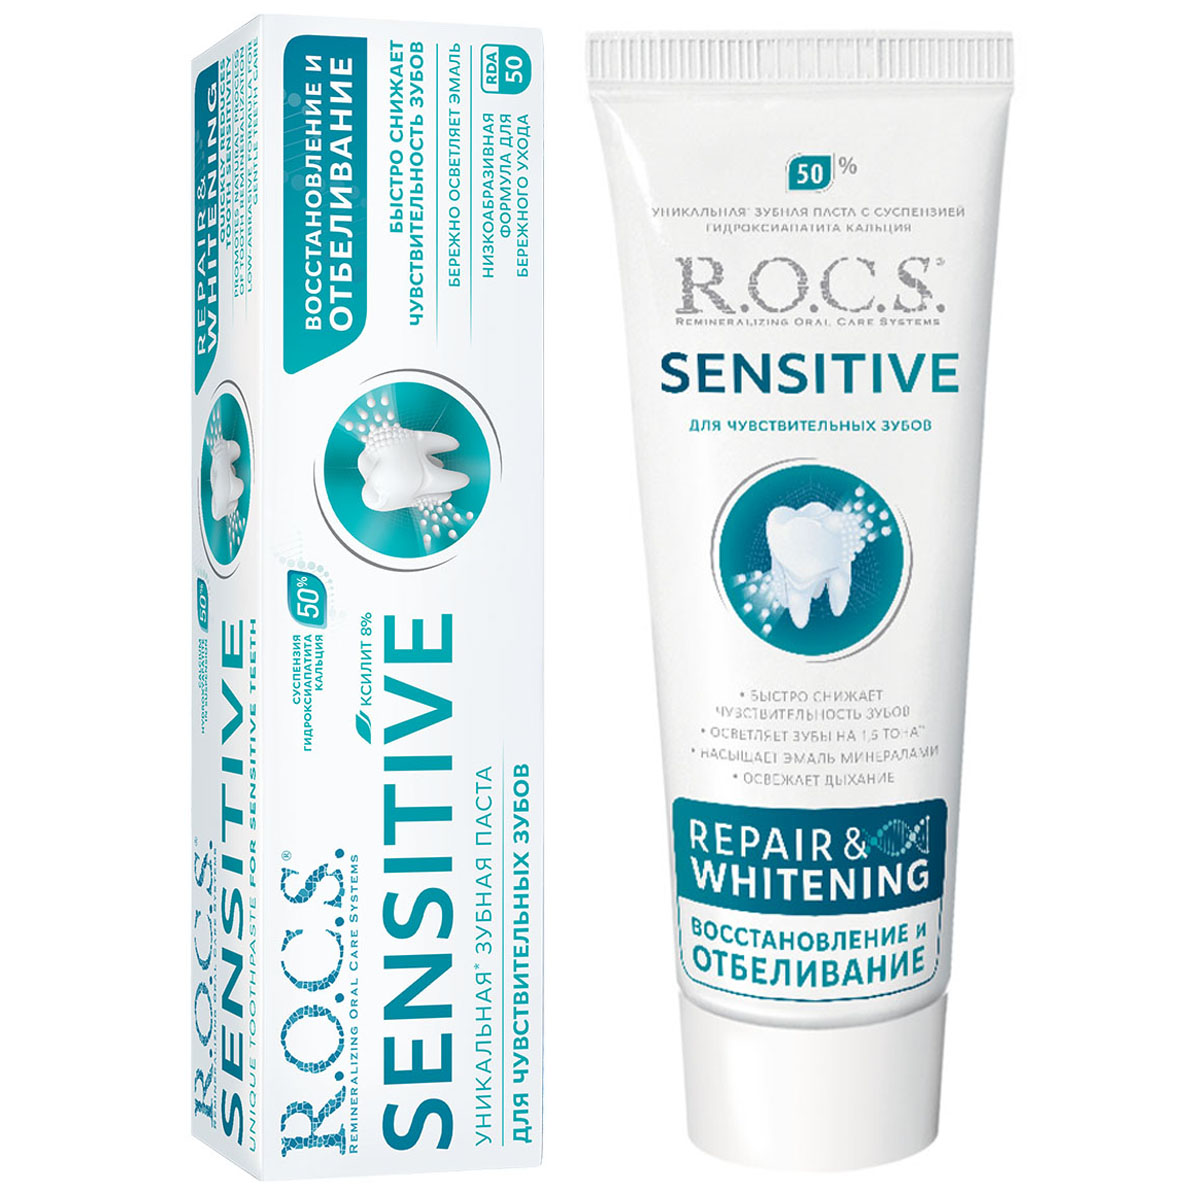 Зубная паста ROCS r o c s sensitive зубная паста восстановление и отбеливание 94 гр